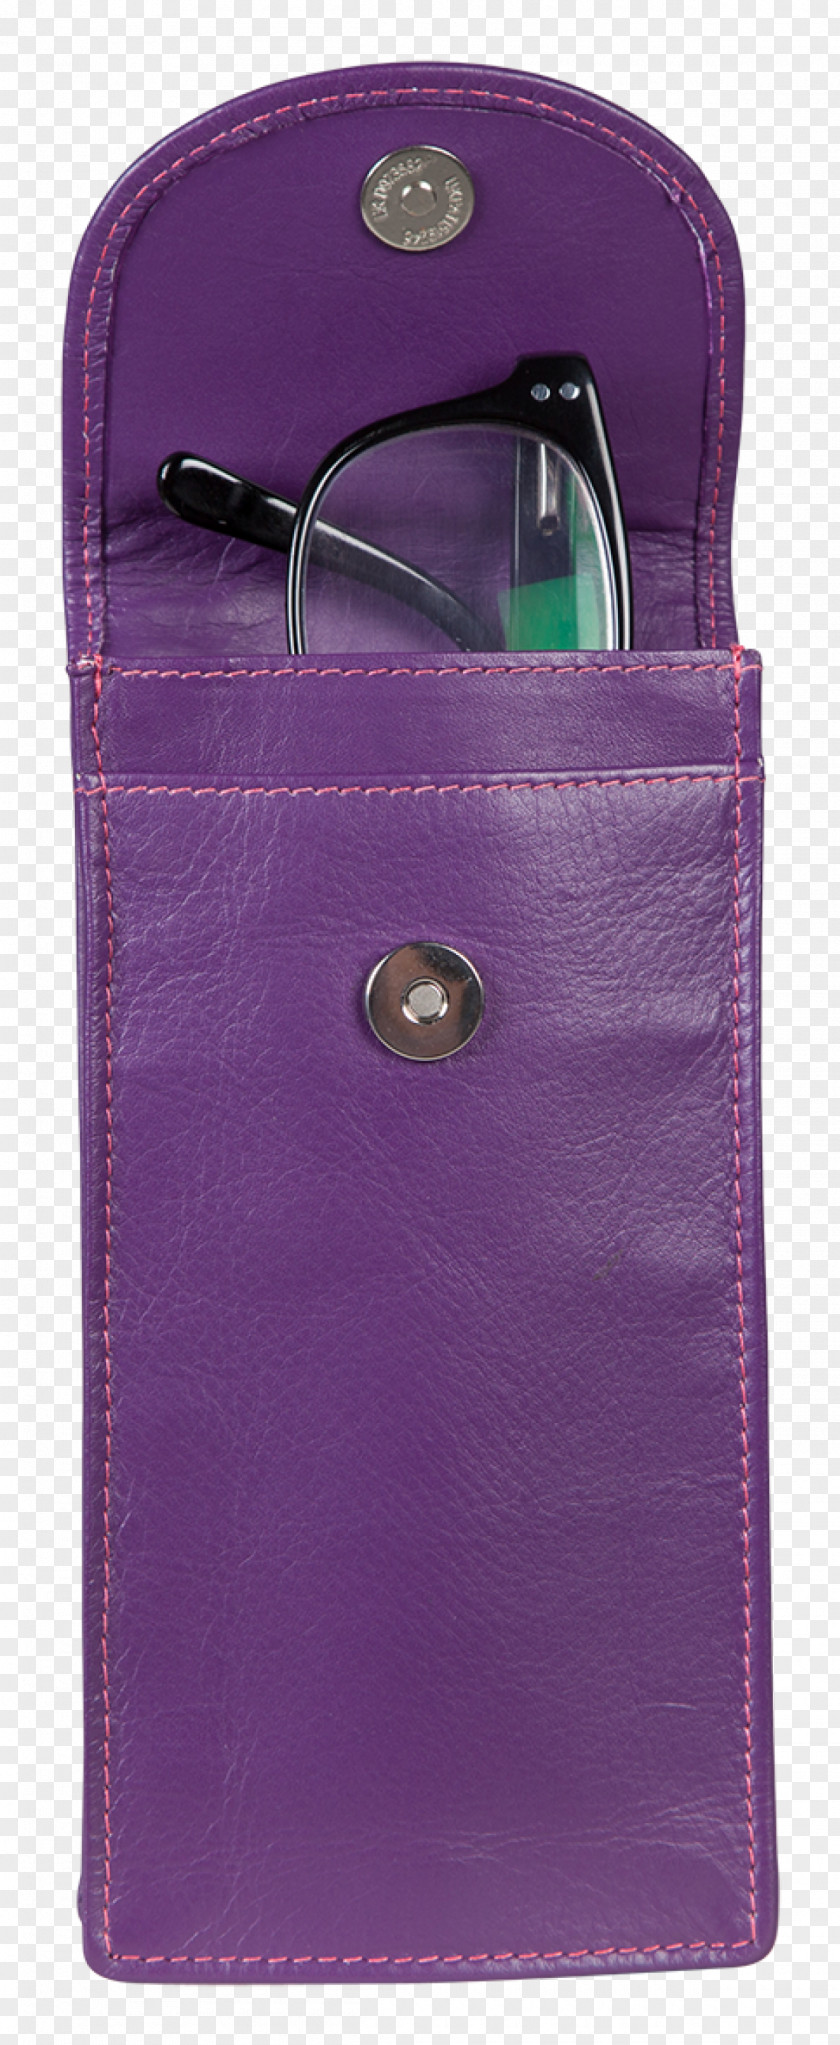 Glass Case Handbag Pocket Glasses Wallet Leather PNG